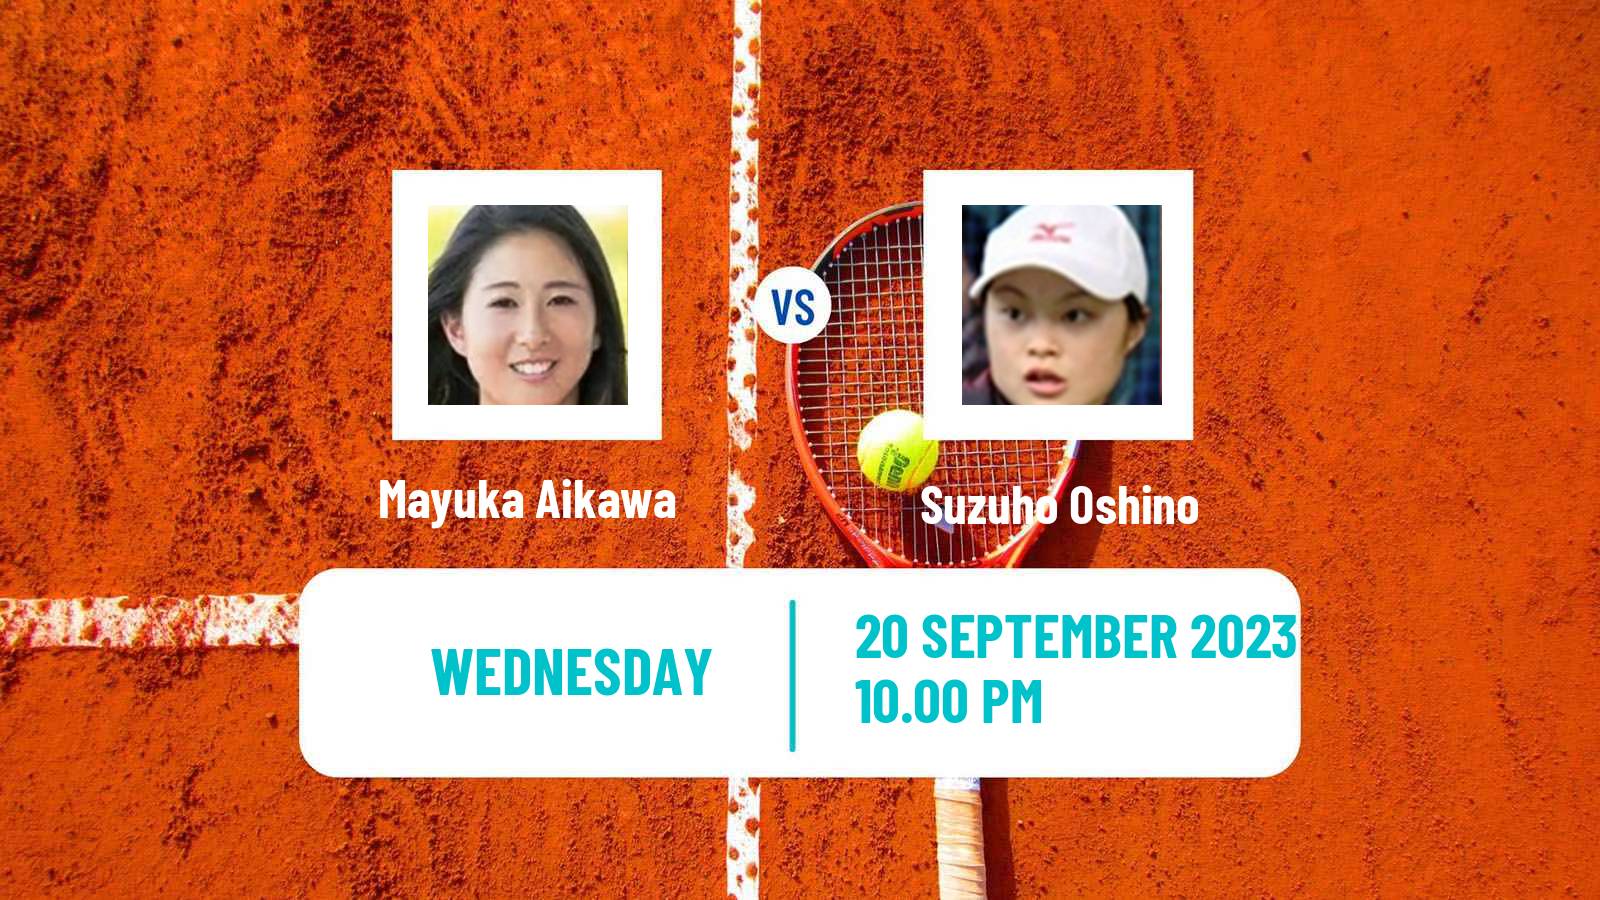 Tennis ITF W25 Kyoto Women Mayuka Aikawa - Suzuho Oshino